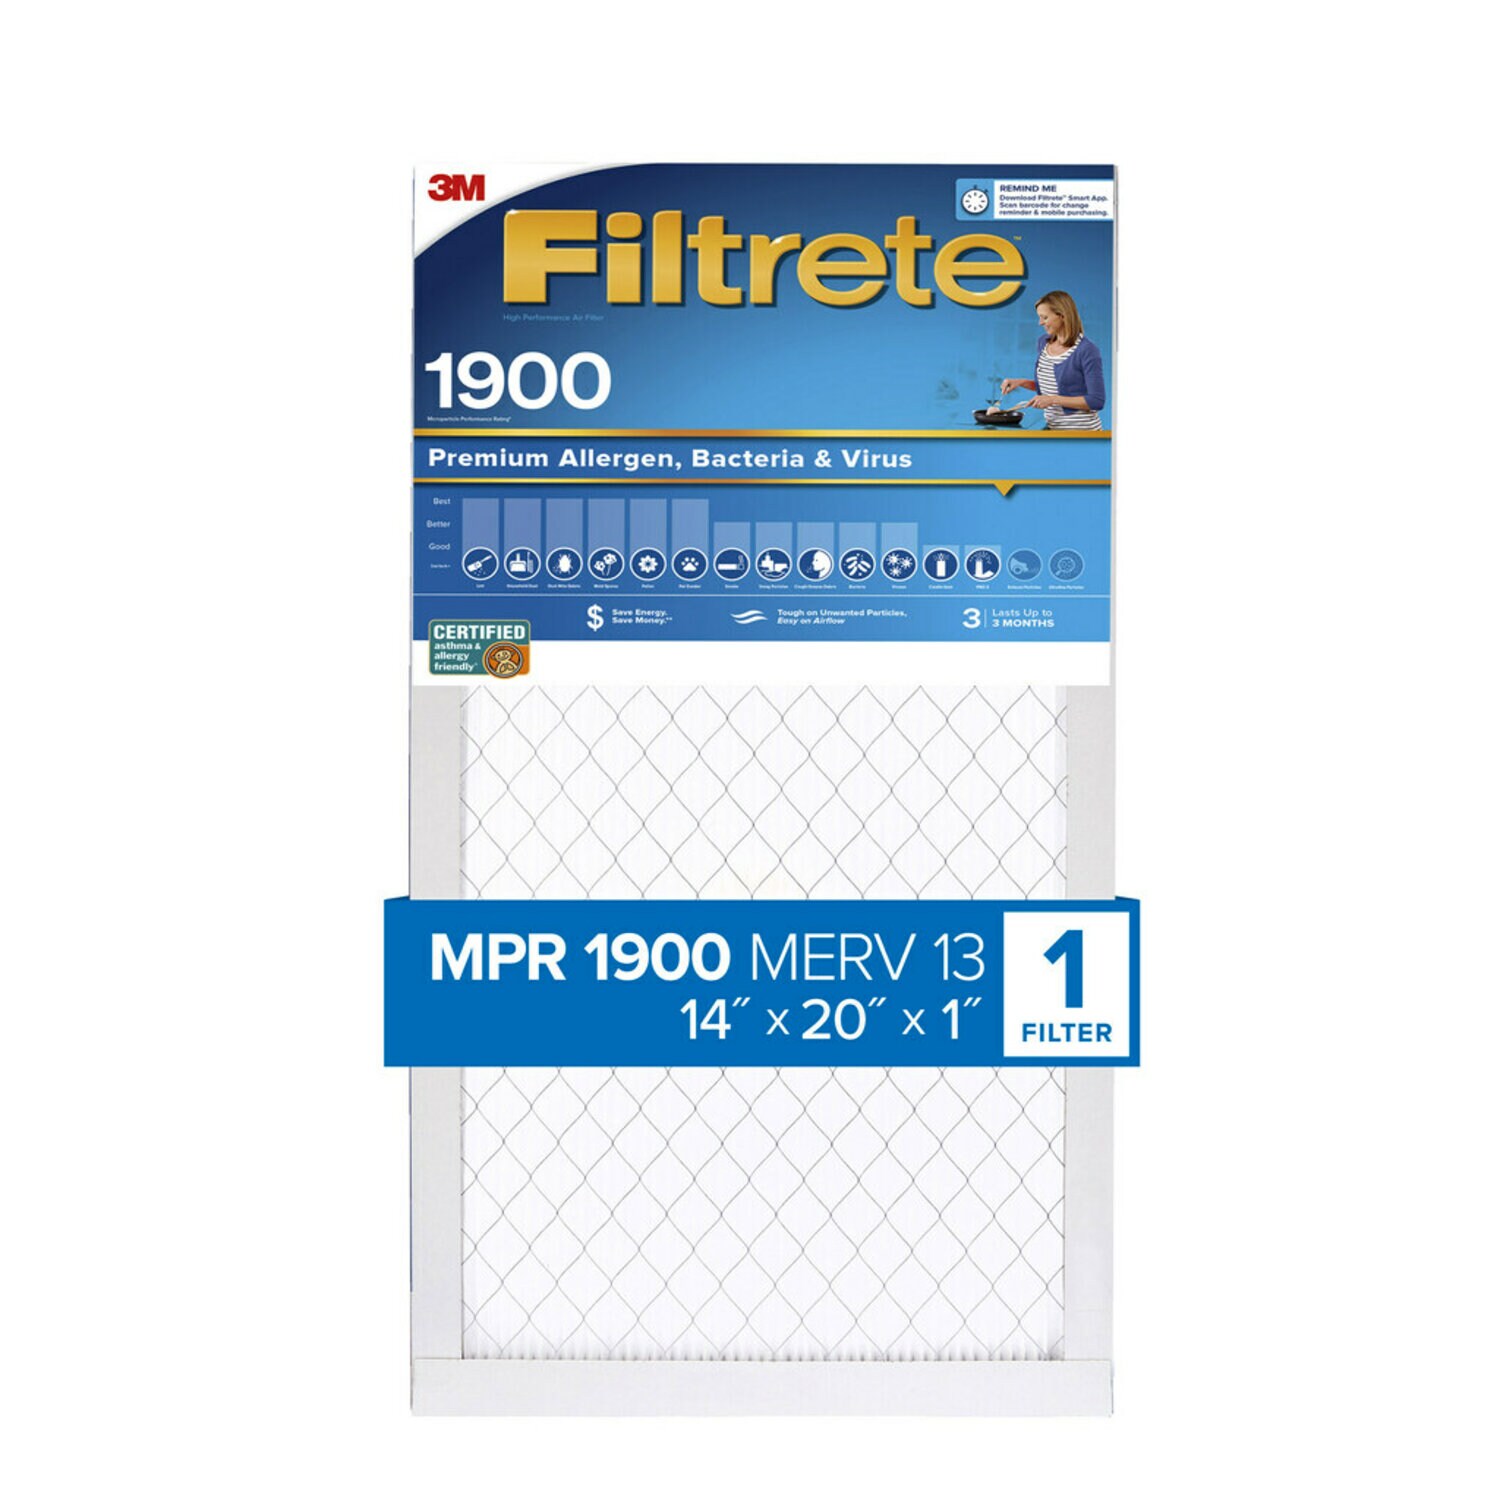 7100222938 - Filtrete High Performance Air Filter 1900 MPR UA05-4, 14 in x 20 in x 1 in (35.5 cm x 50.8 cm x 2.5 cm)